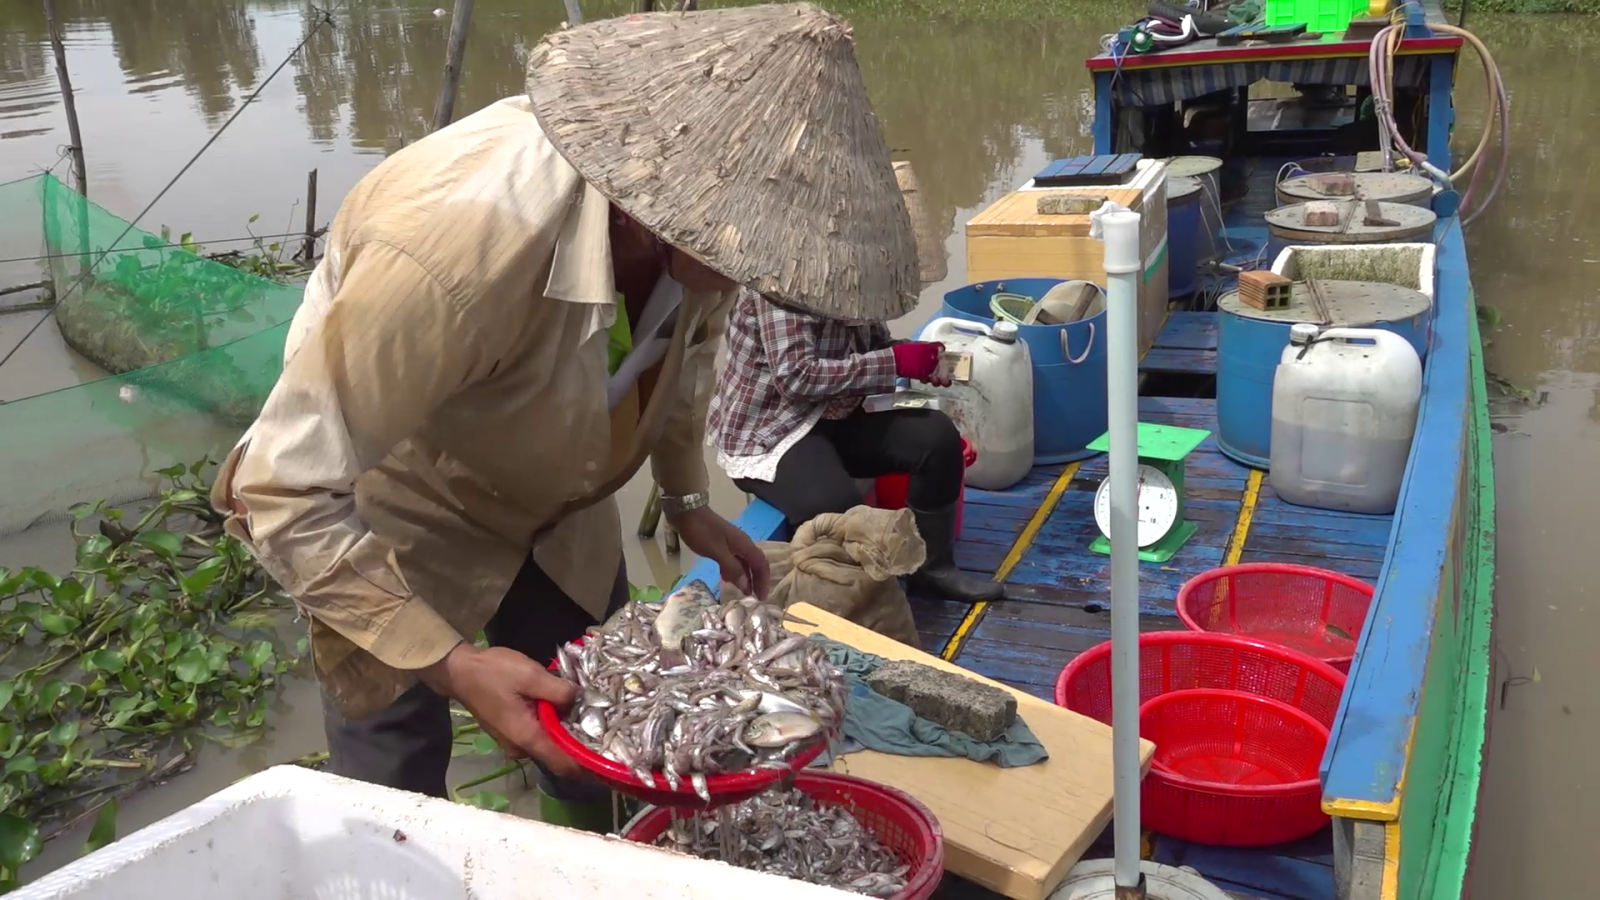 Mưu sinh bằng nghề đánh bắt cá mang lại thu nhập ổn định cho nhiều gia đình trong mùa lũ